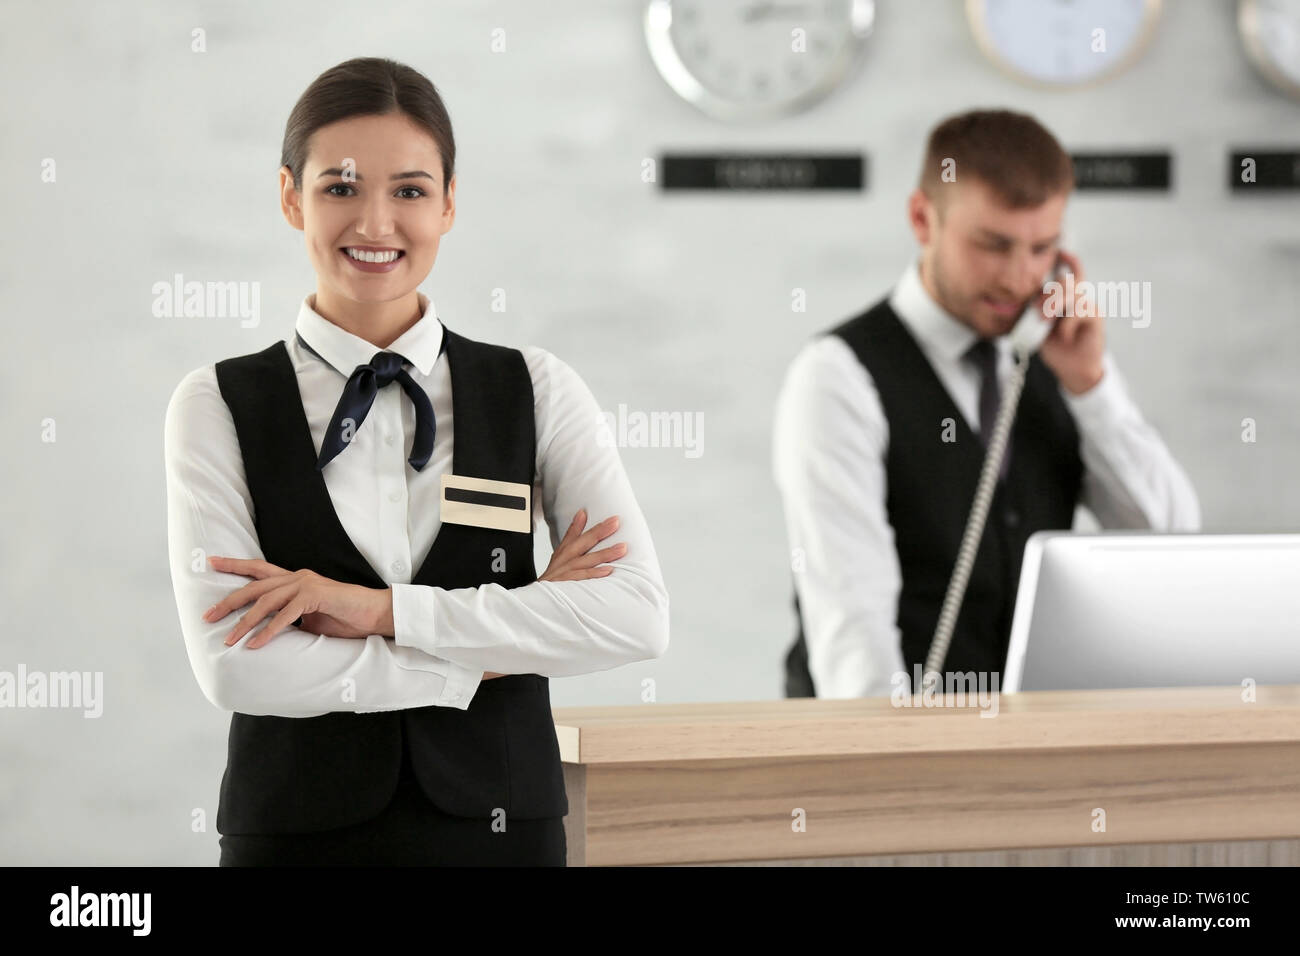 Hotel receptionist immagini e fotografie stock ad alta risoluzione - Alamy